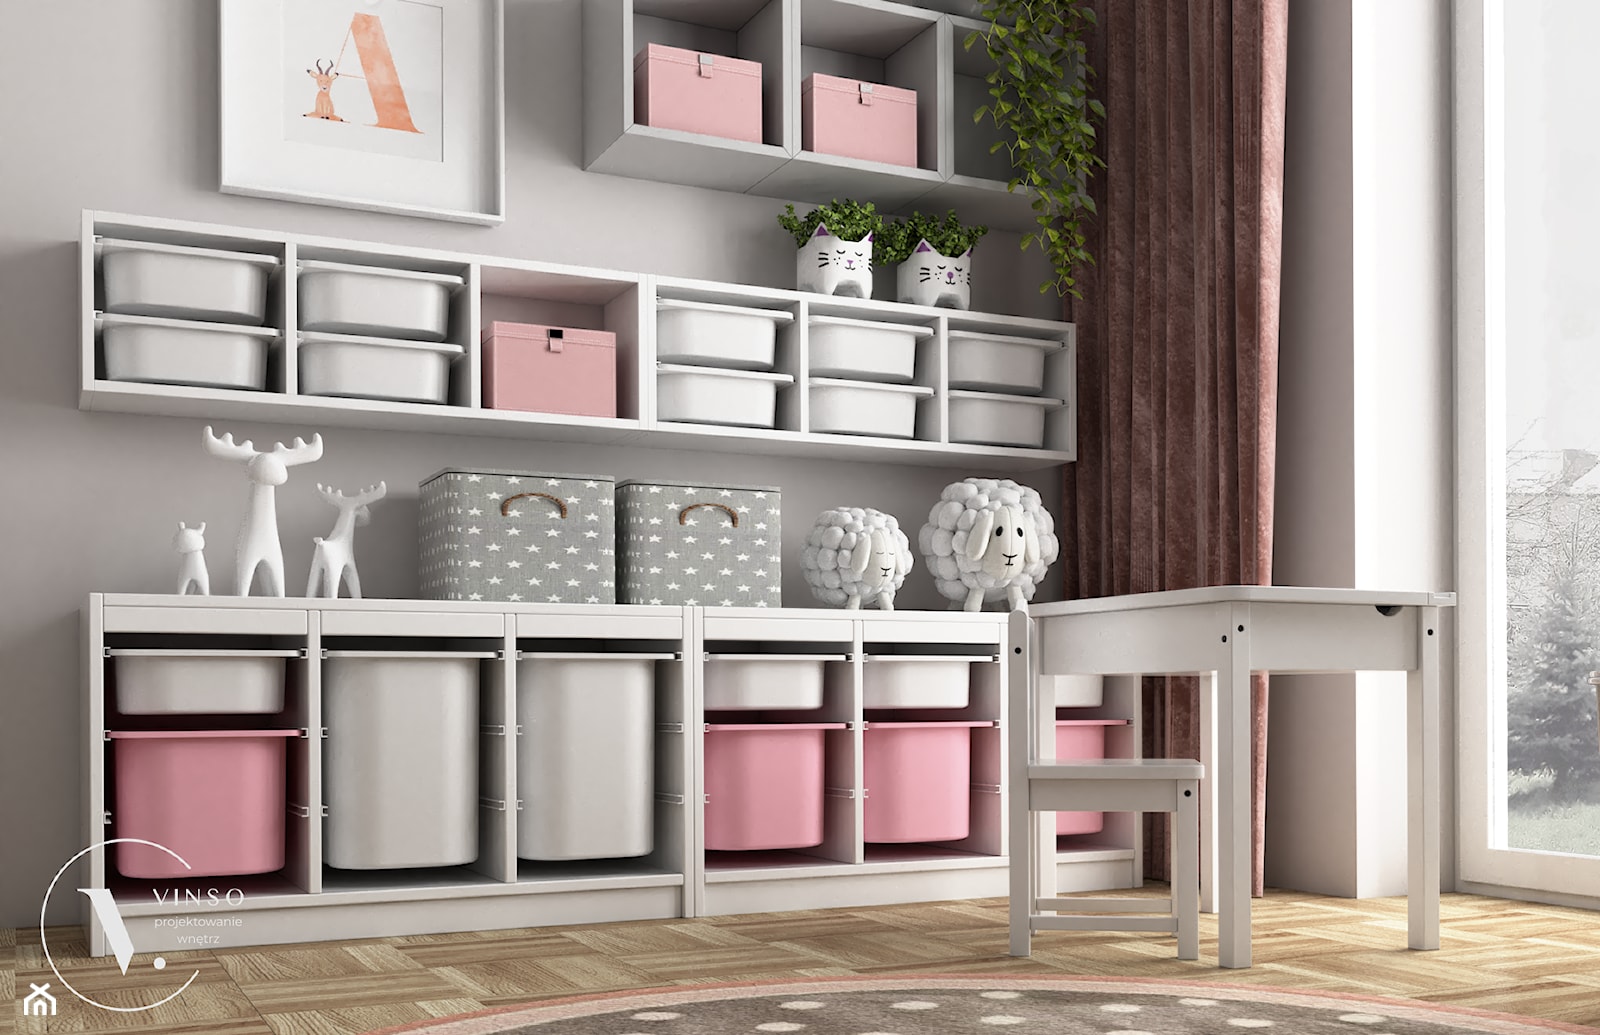 Różowy pokój dla małej dziewczynki - Pokój dziecka, styl skandynawski - zdjęcie od VINSO Projektowanie Wnętrz - Homebook